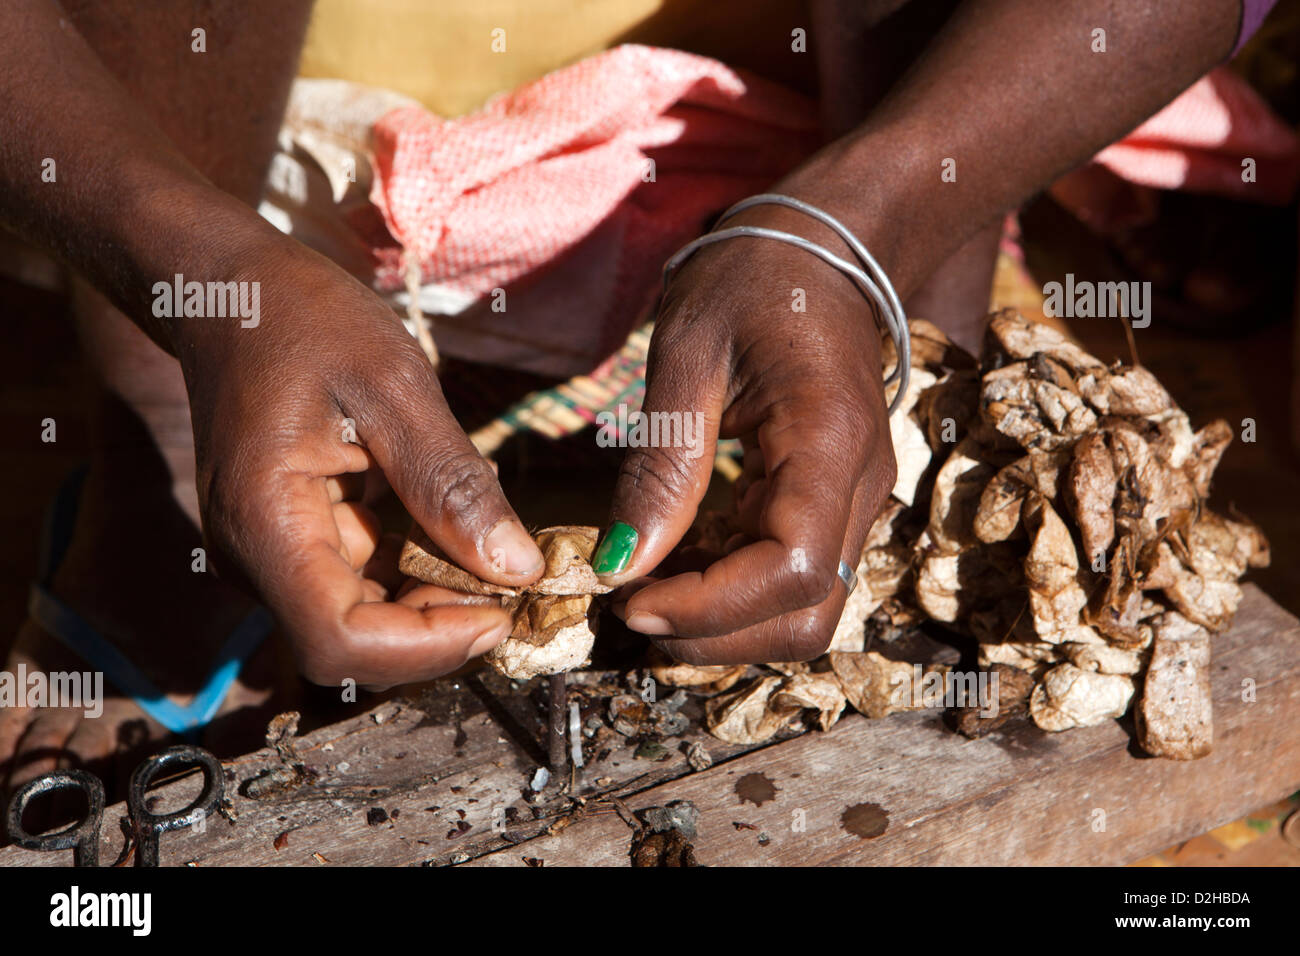 Madagascar, Ambalavao, Soalandy Atelier soie mains de travailleur les cocons de soie sauvage tournant Banque D'Images